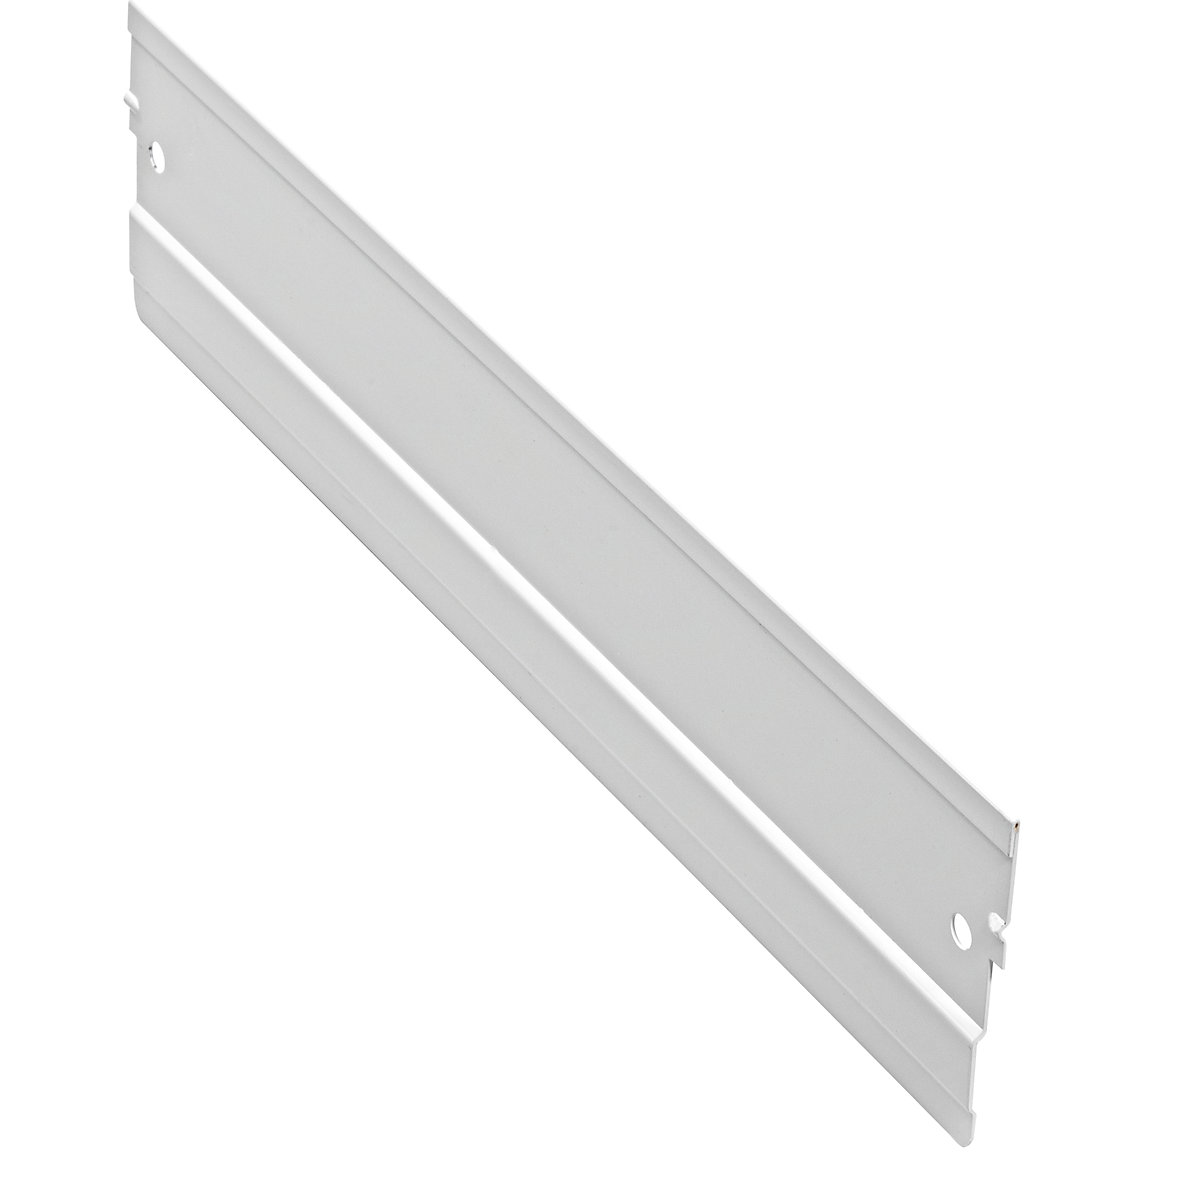 mauser – Przegroda wzdłużna, szara, do dł. x wys. 400 x 90 mm, opak. 10 szt.